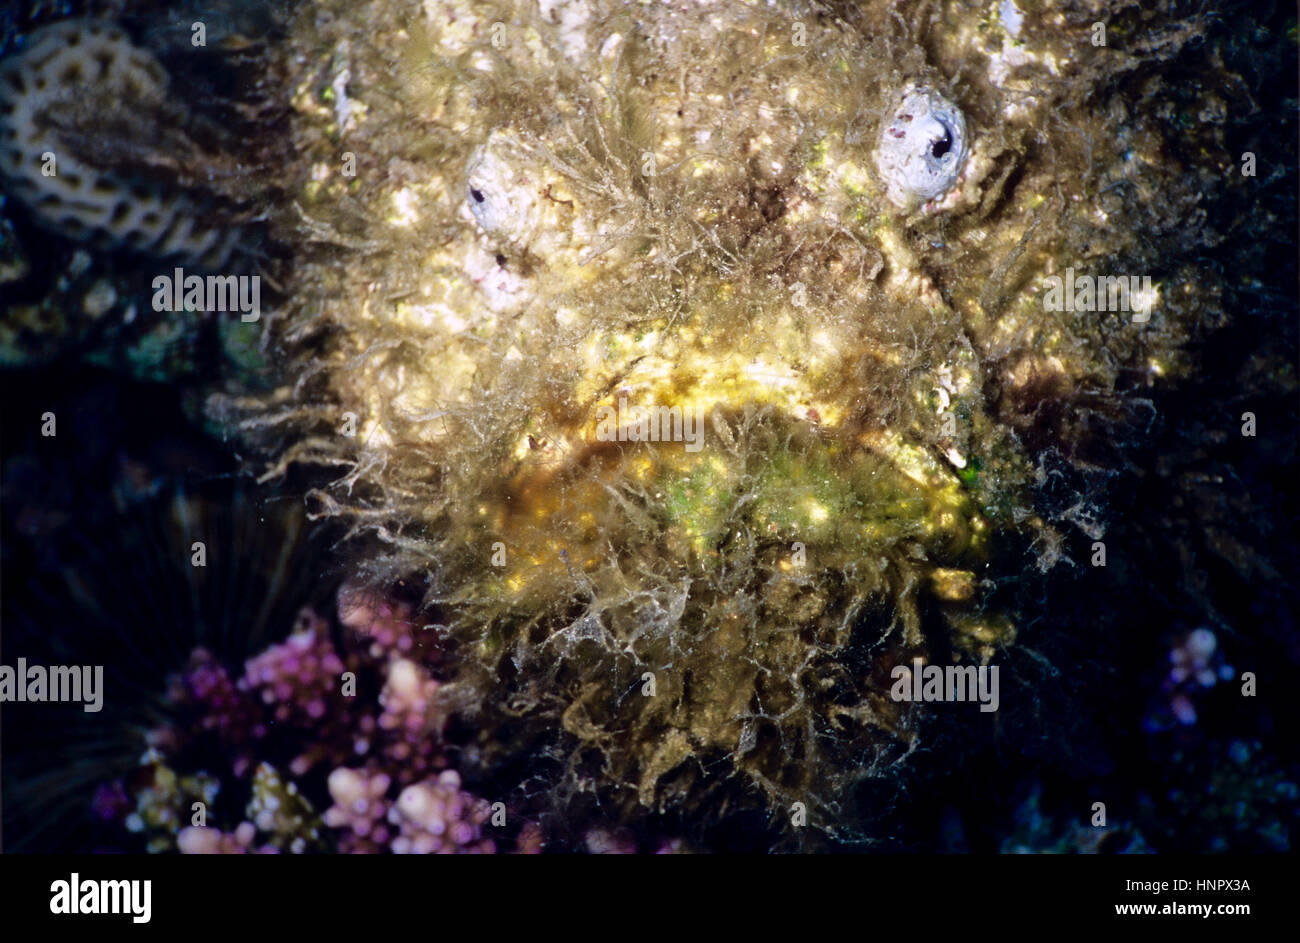 Un poisson-pierre venimeuse et potentiellement mortelle (Syanceia verrucosa) : un prédateur sauvage avec l'amélioration de la croissance des algues par camouflage. Mer Rouge. Banque D'Images